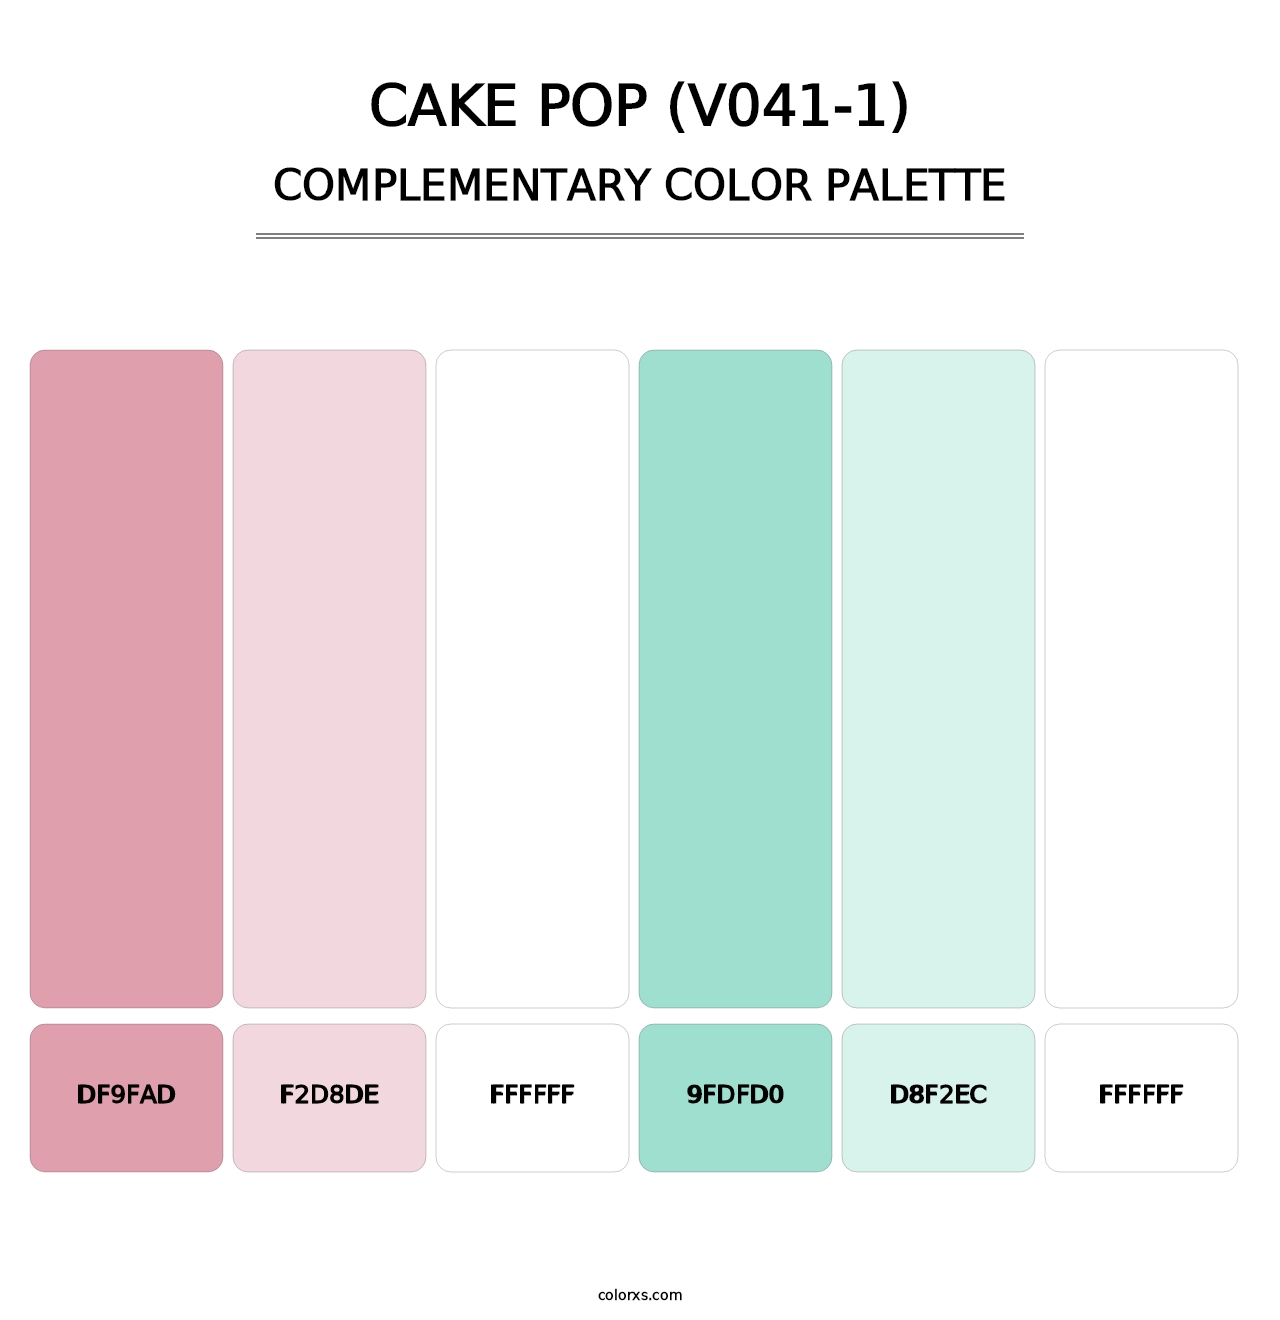 Cake Pop (V041-1) - Complementary Color Palette